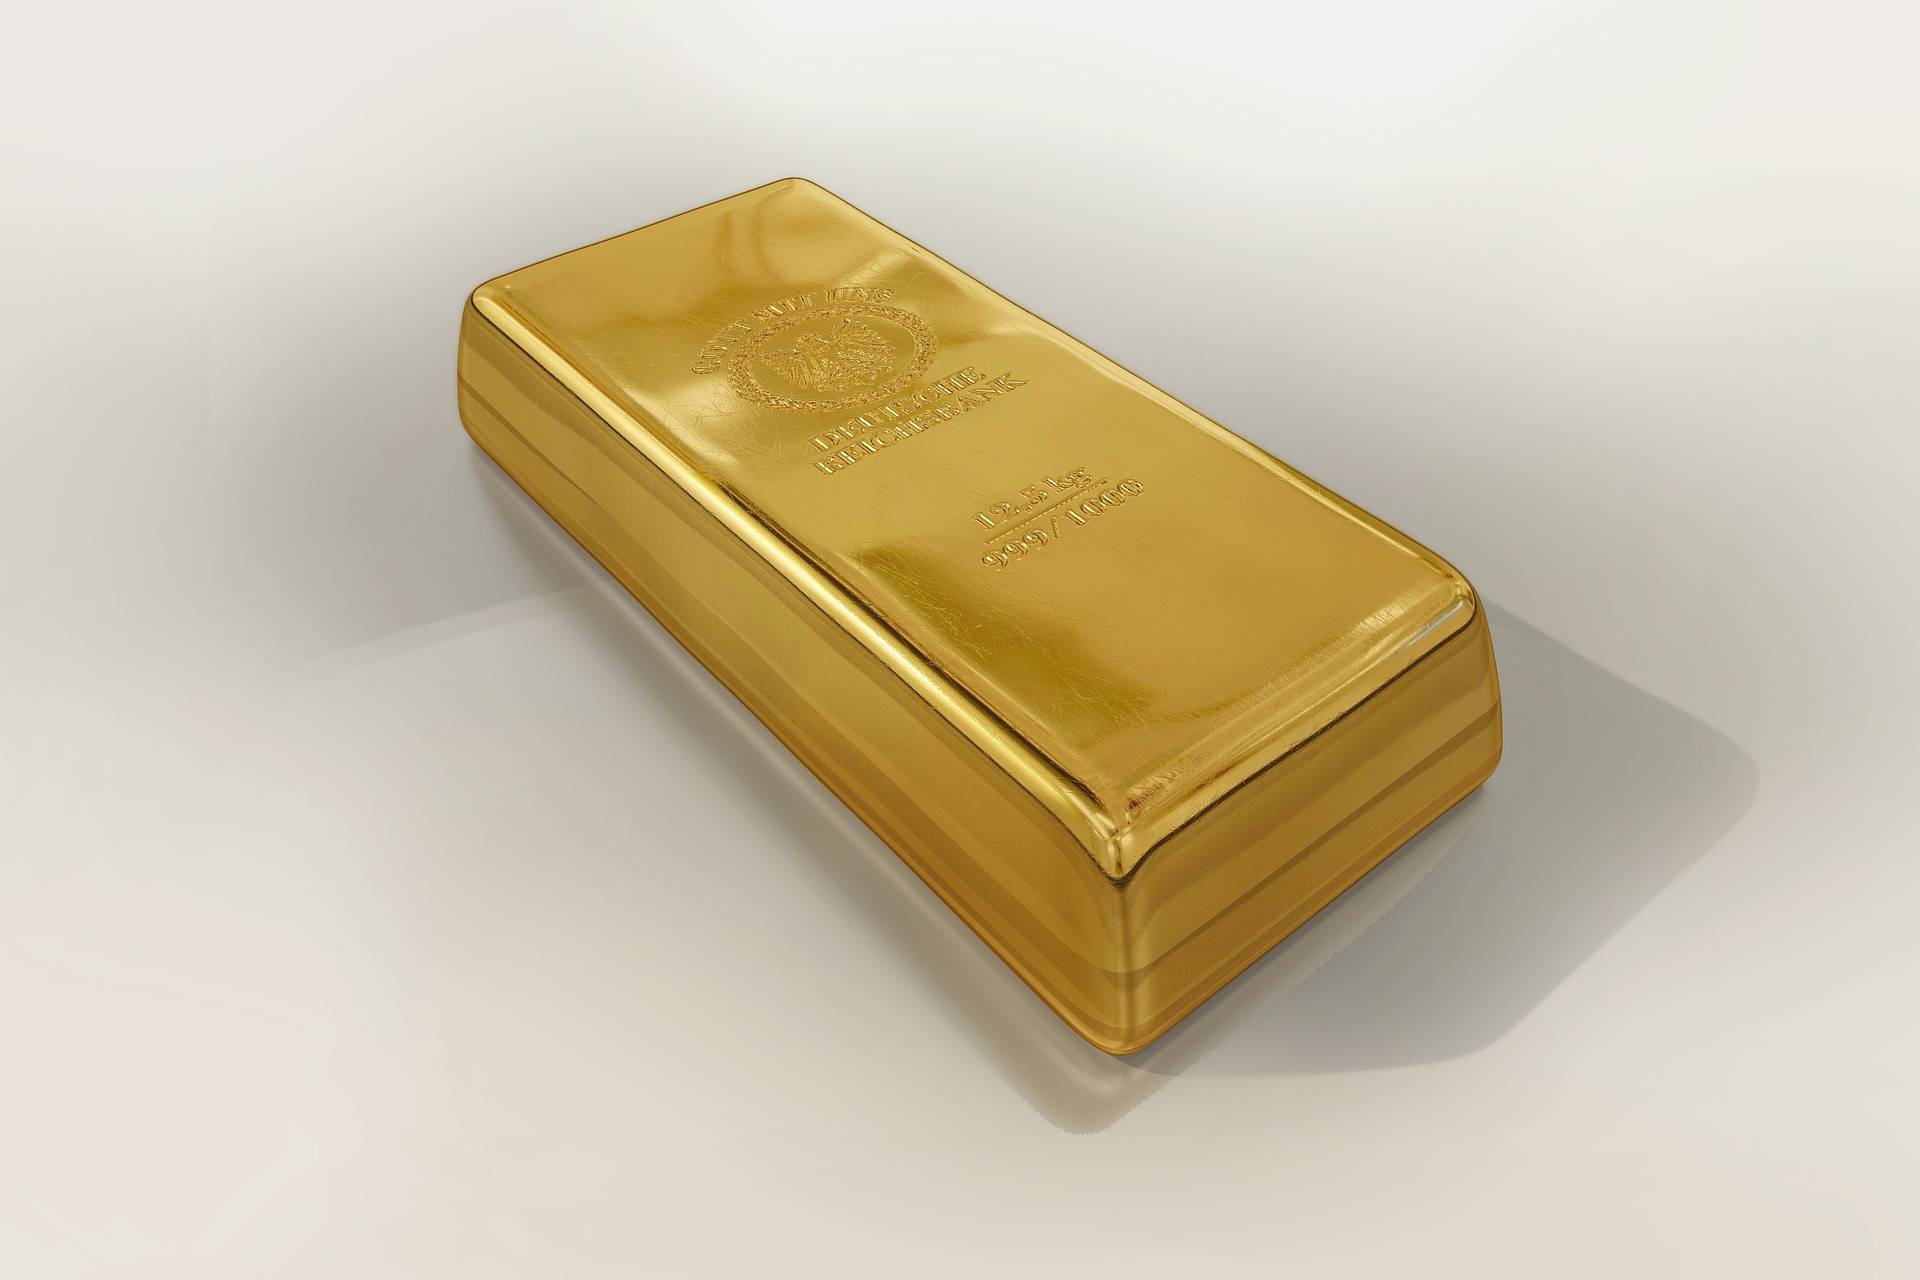 Achat d'or de patrimoine, comptoir universel de l'Or Paris